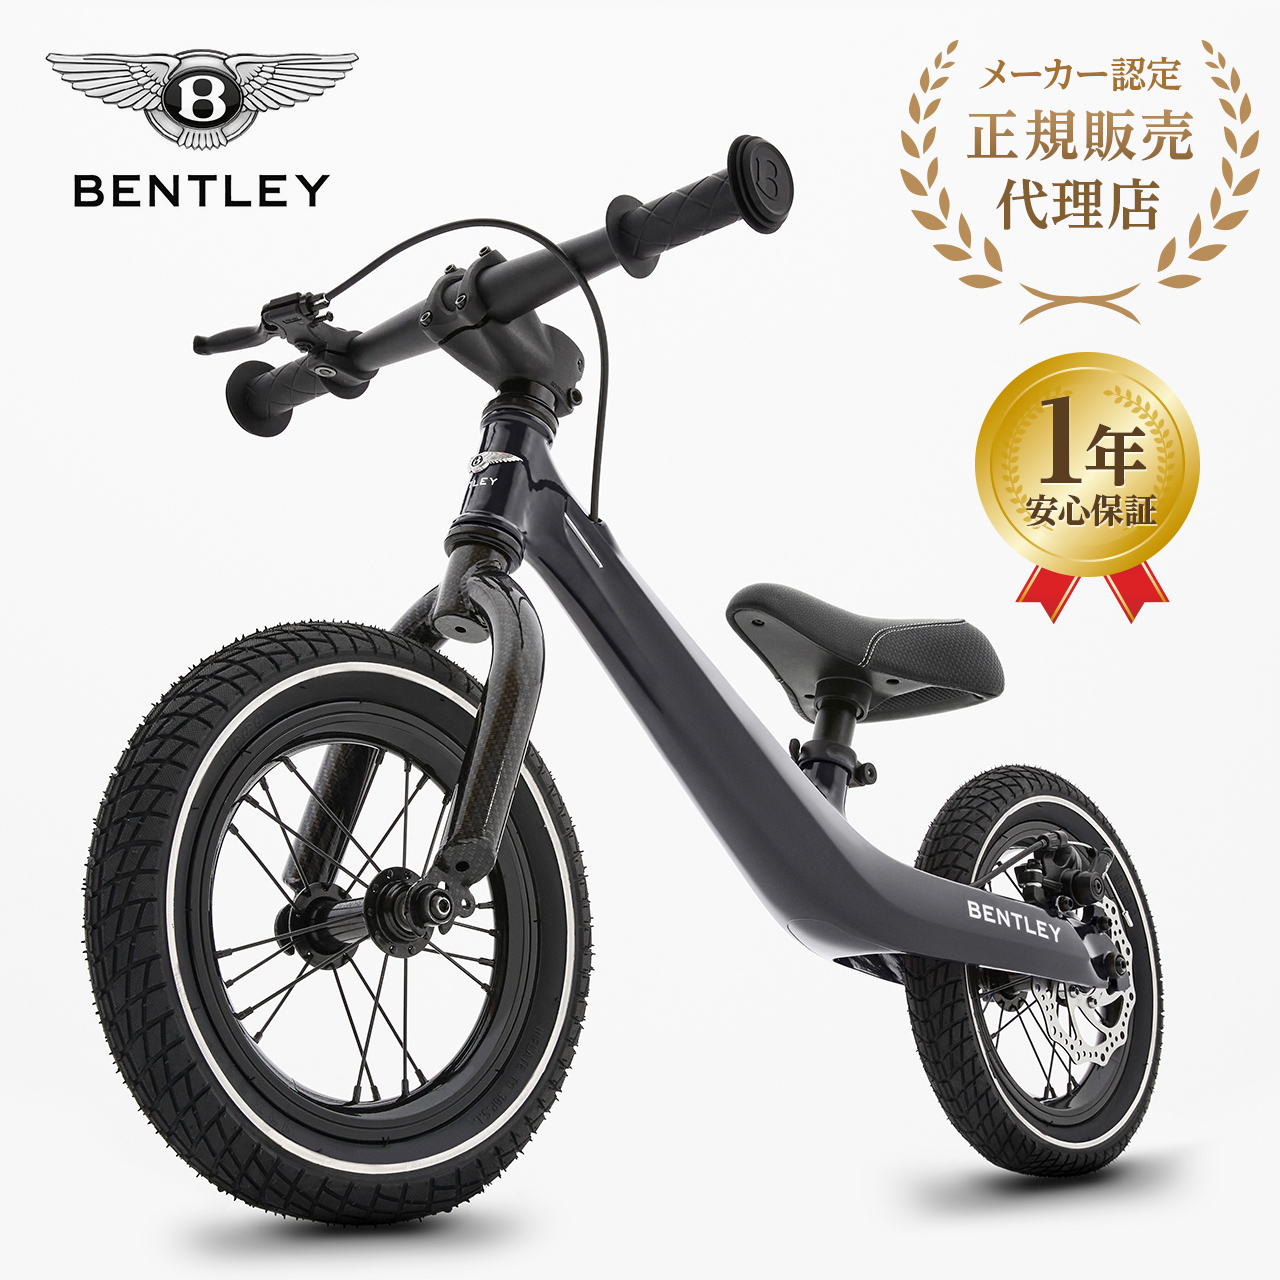 【正規販売店】 Bentleyバランスバイク ベントレー 3歳 誕生日 クリスマス プレゼント キックバイク キッズバイク ペダルなし ブレーキ付き 黒 白 1年保証 yct